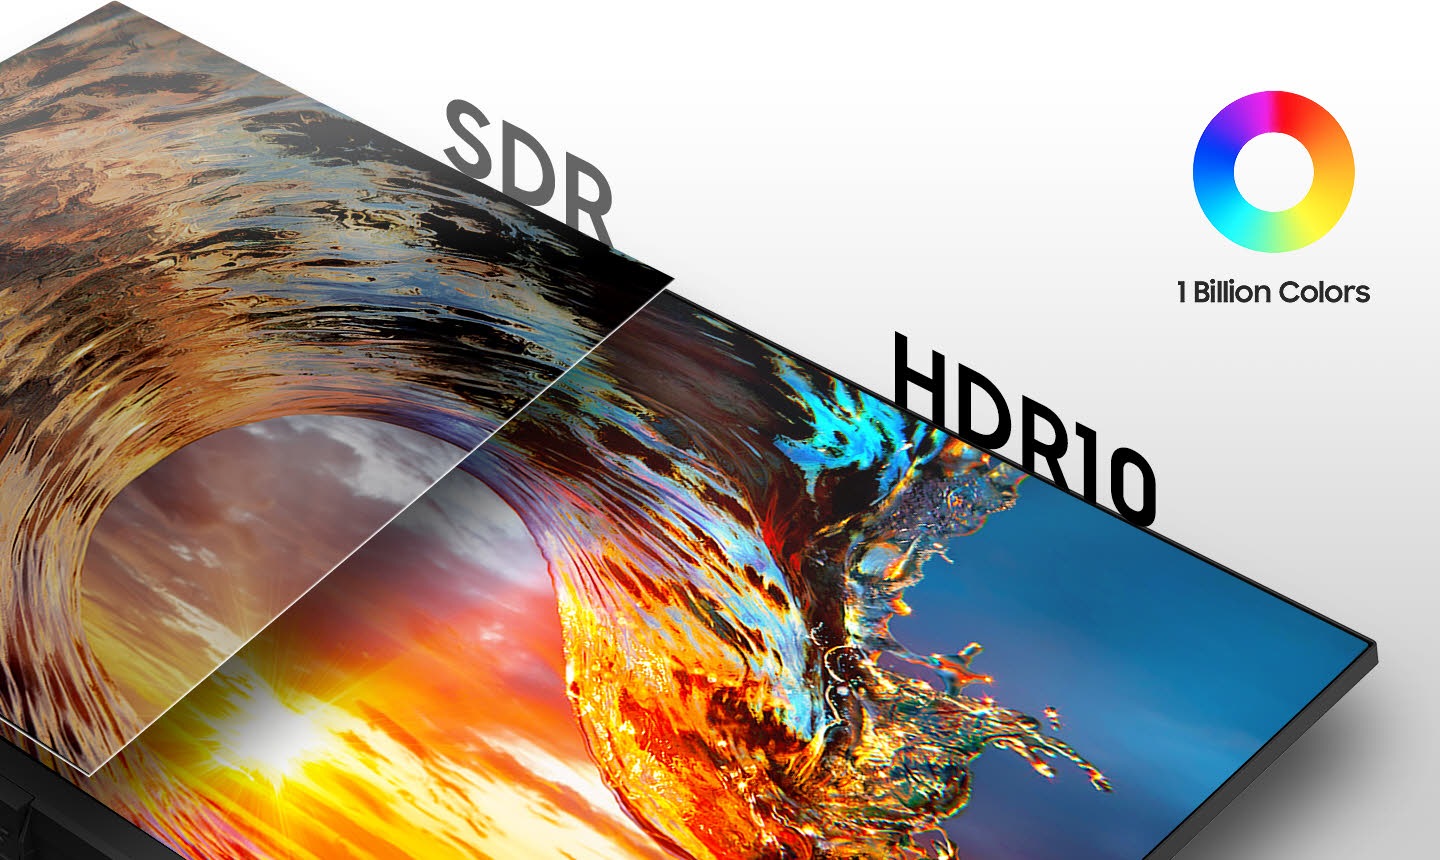 So sánh màn hình SDR ở bên trái và màn hình HDR10 ở bên phải. Có 1 biểu tượng Tỷ màu ở trên cùng bên phải.